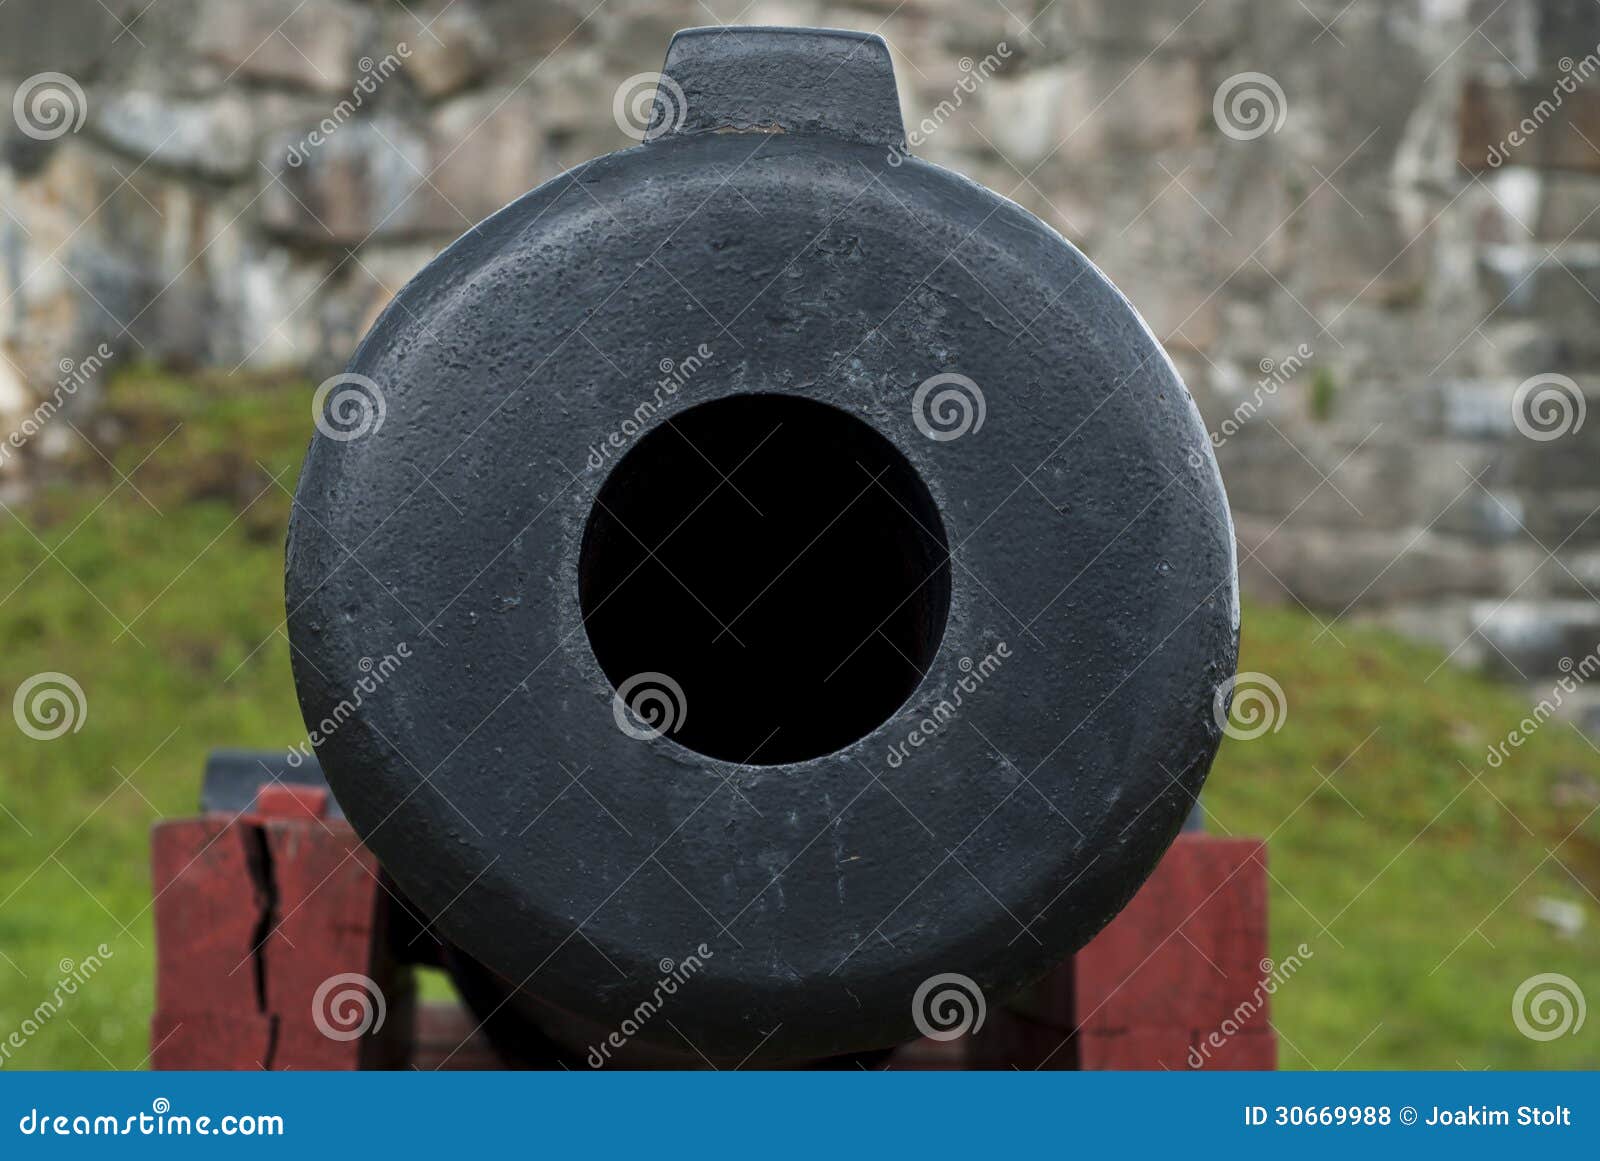 cannon muzzle